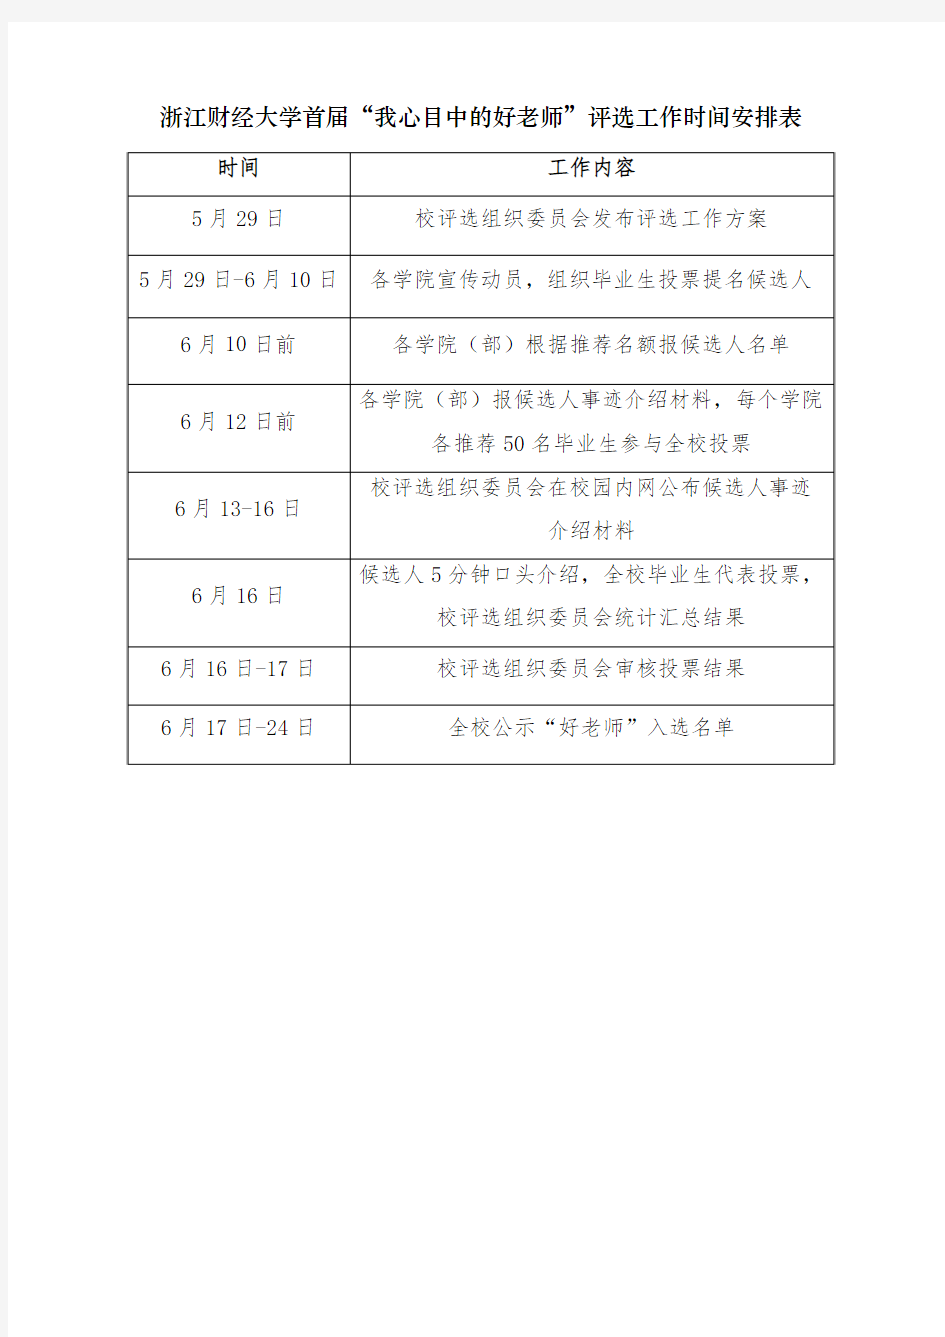 浙江财经大学首届“我心目中的好老师”评选工作时间安排表